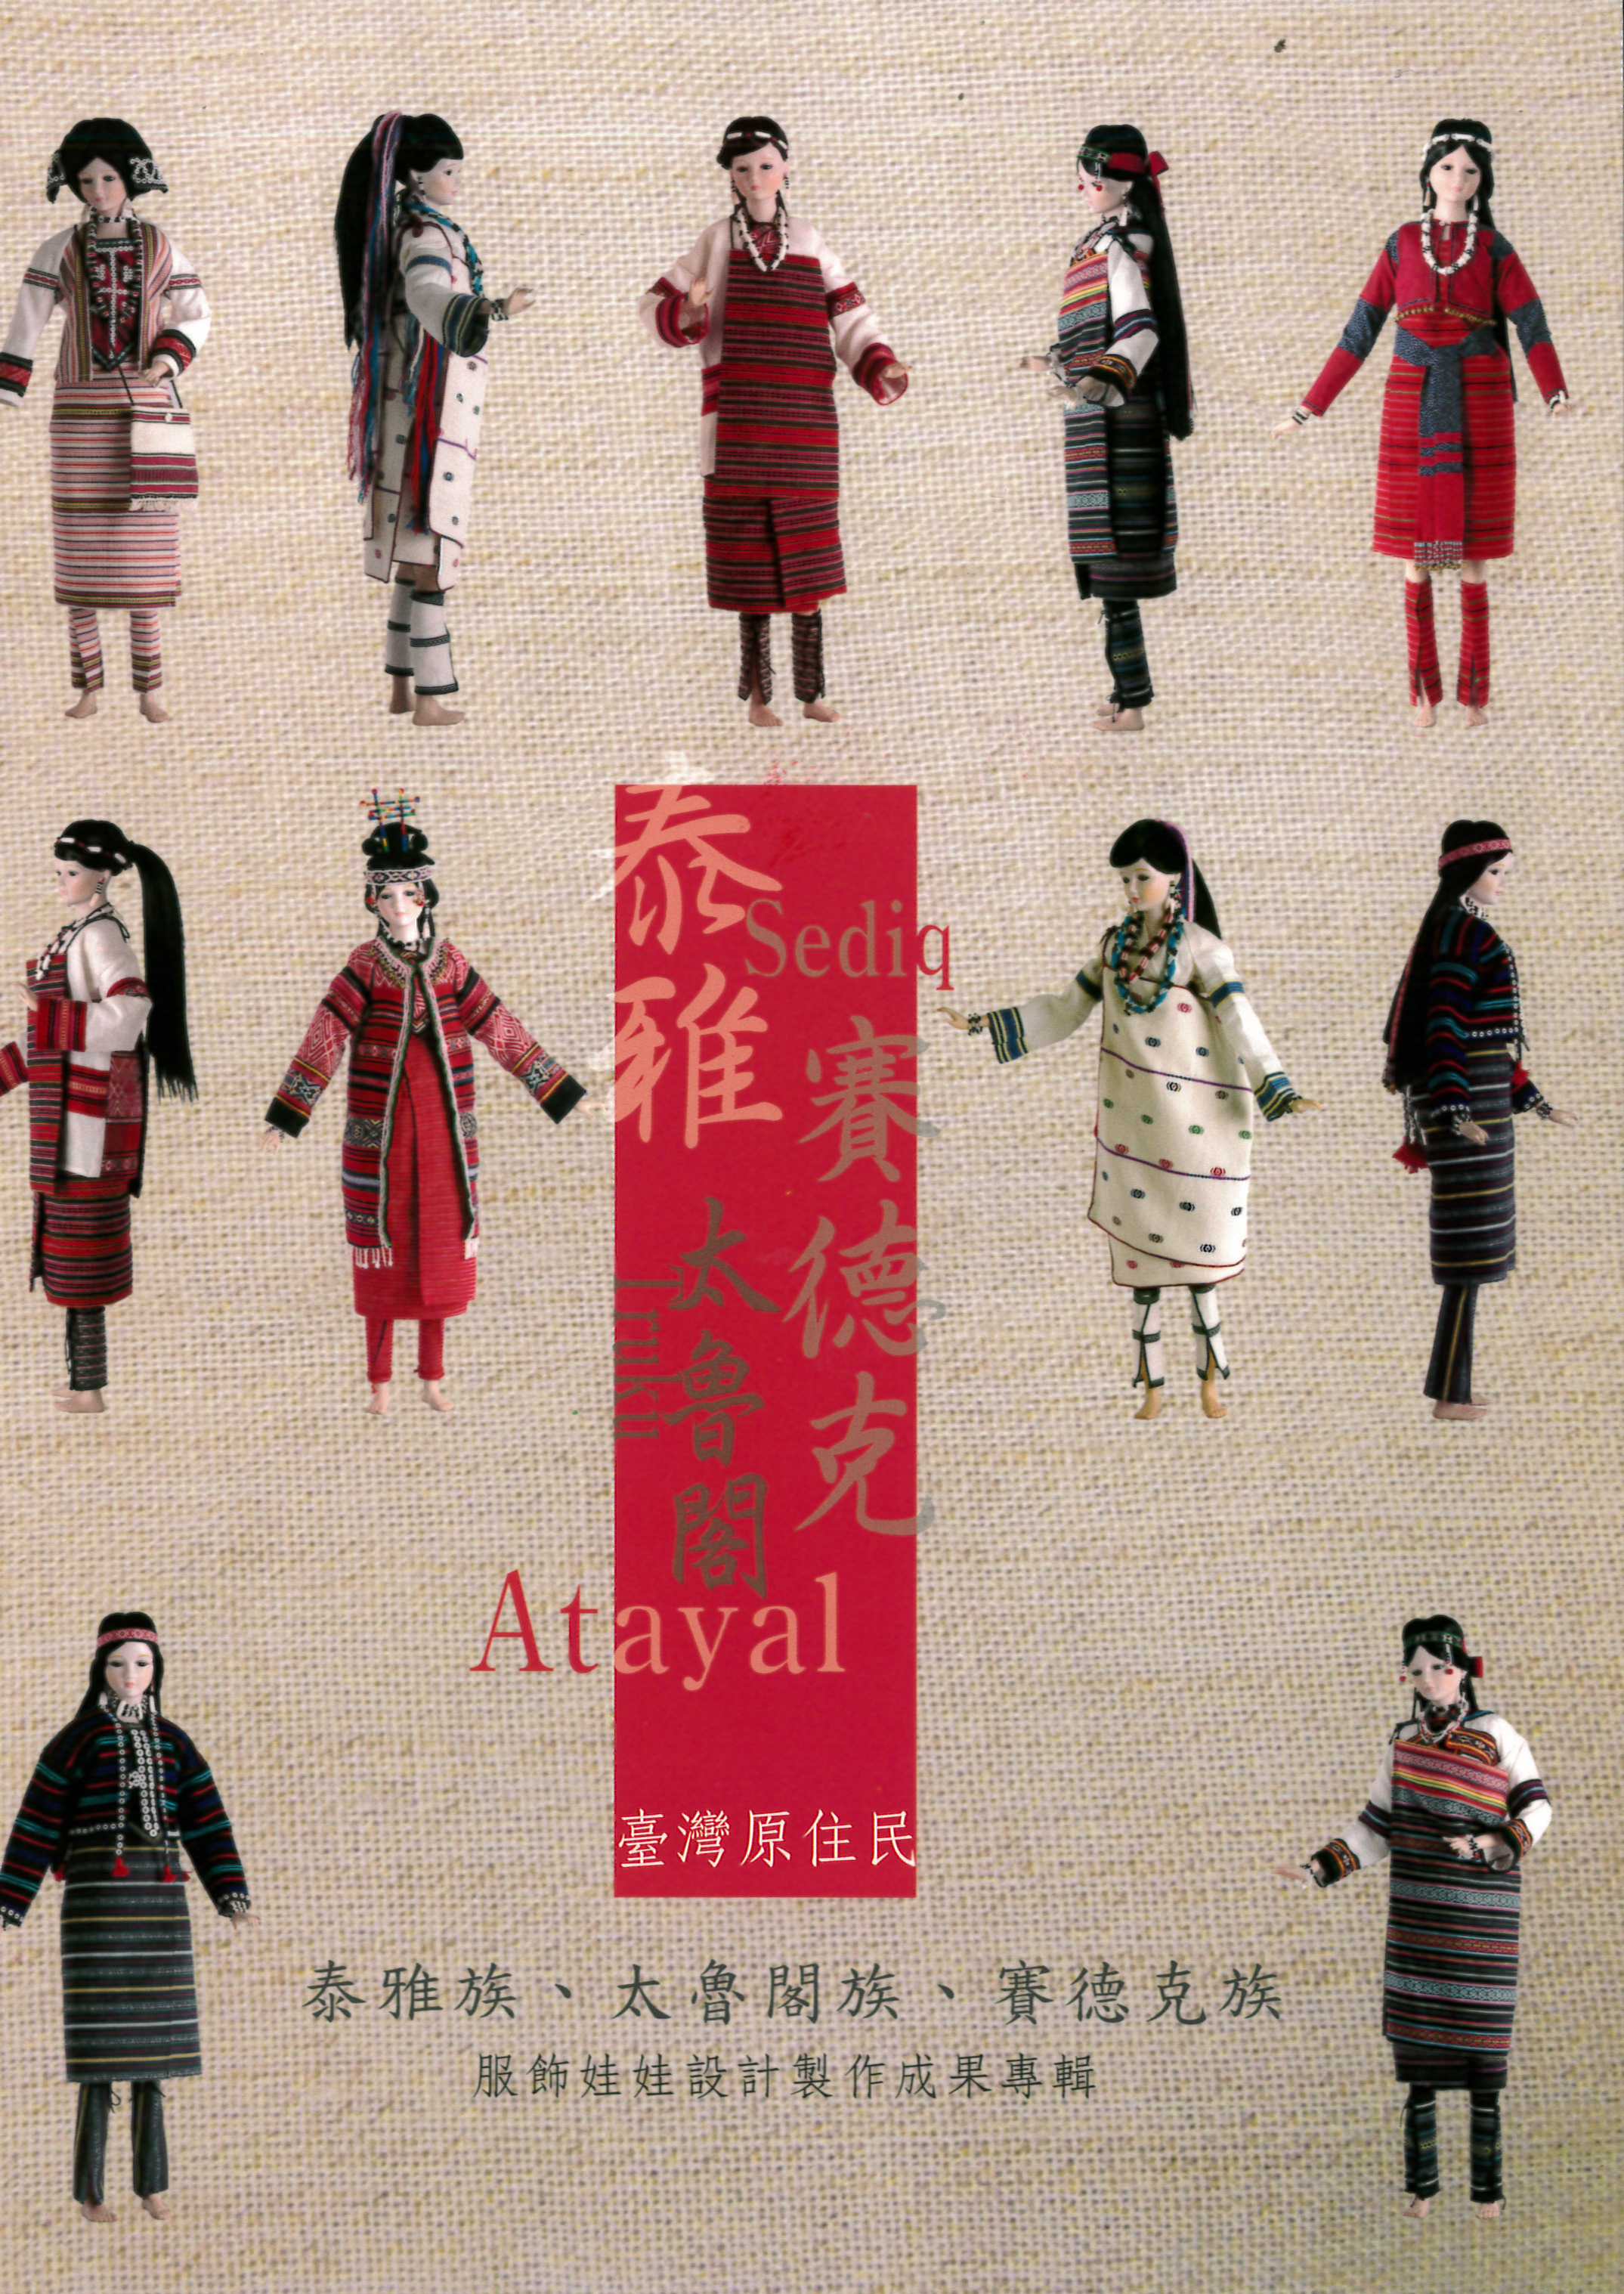 臺灣原住民泰雅族、太魯閣族、賽德克族服飾娃娃設計製作成果專輯